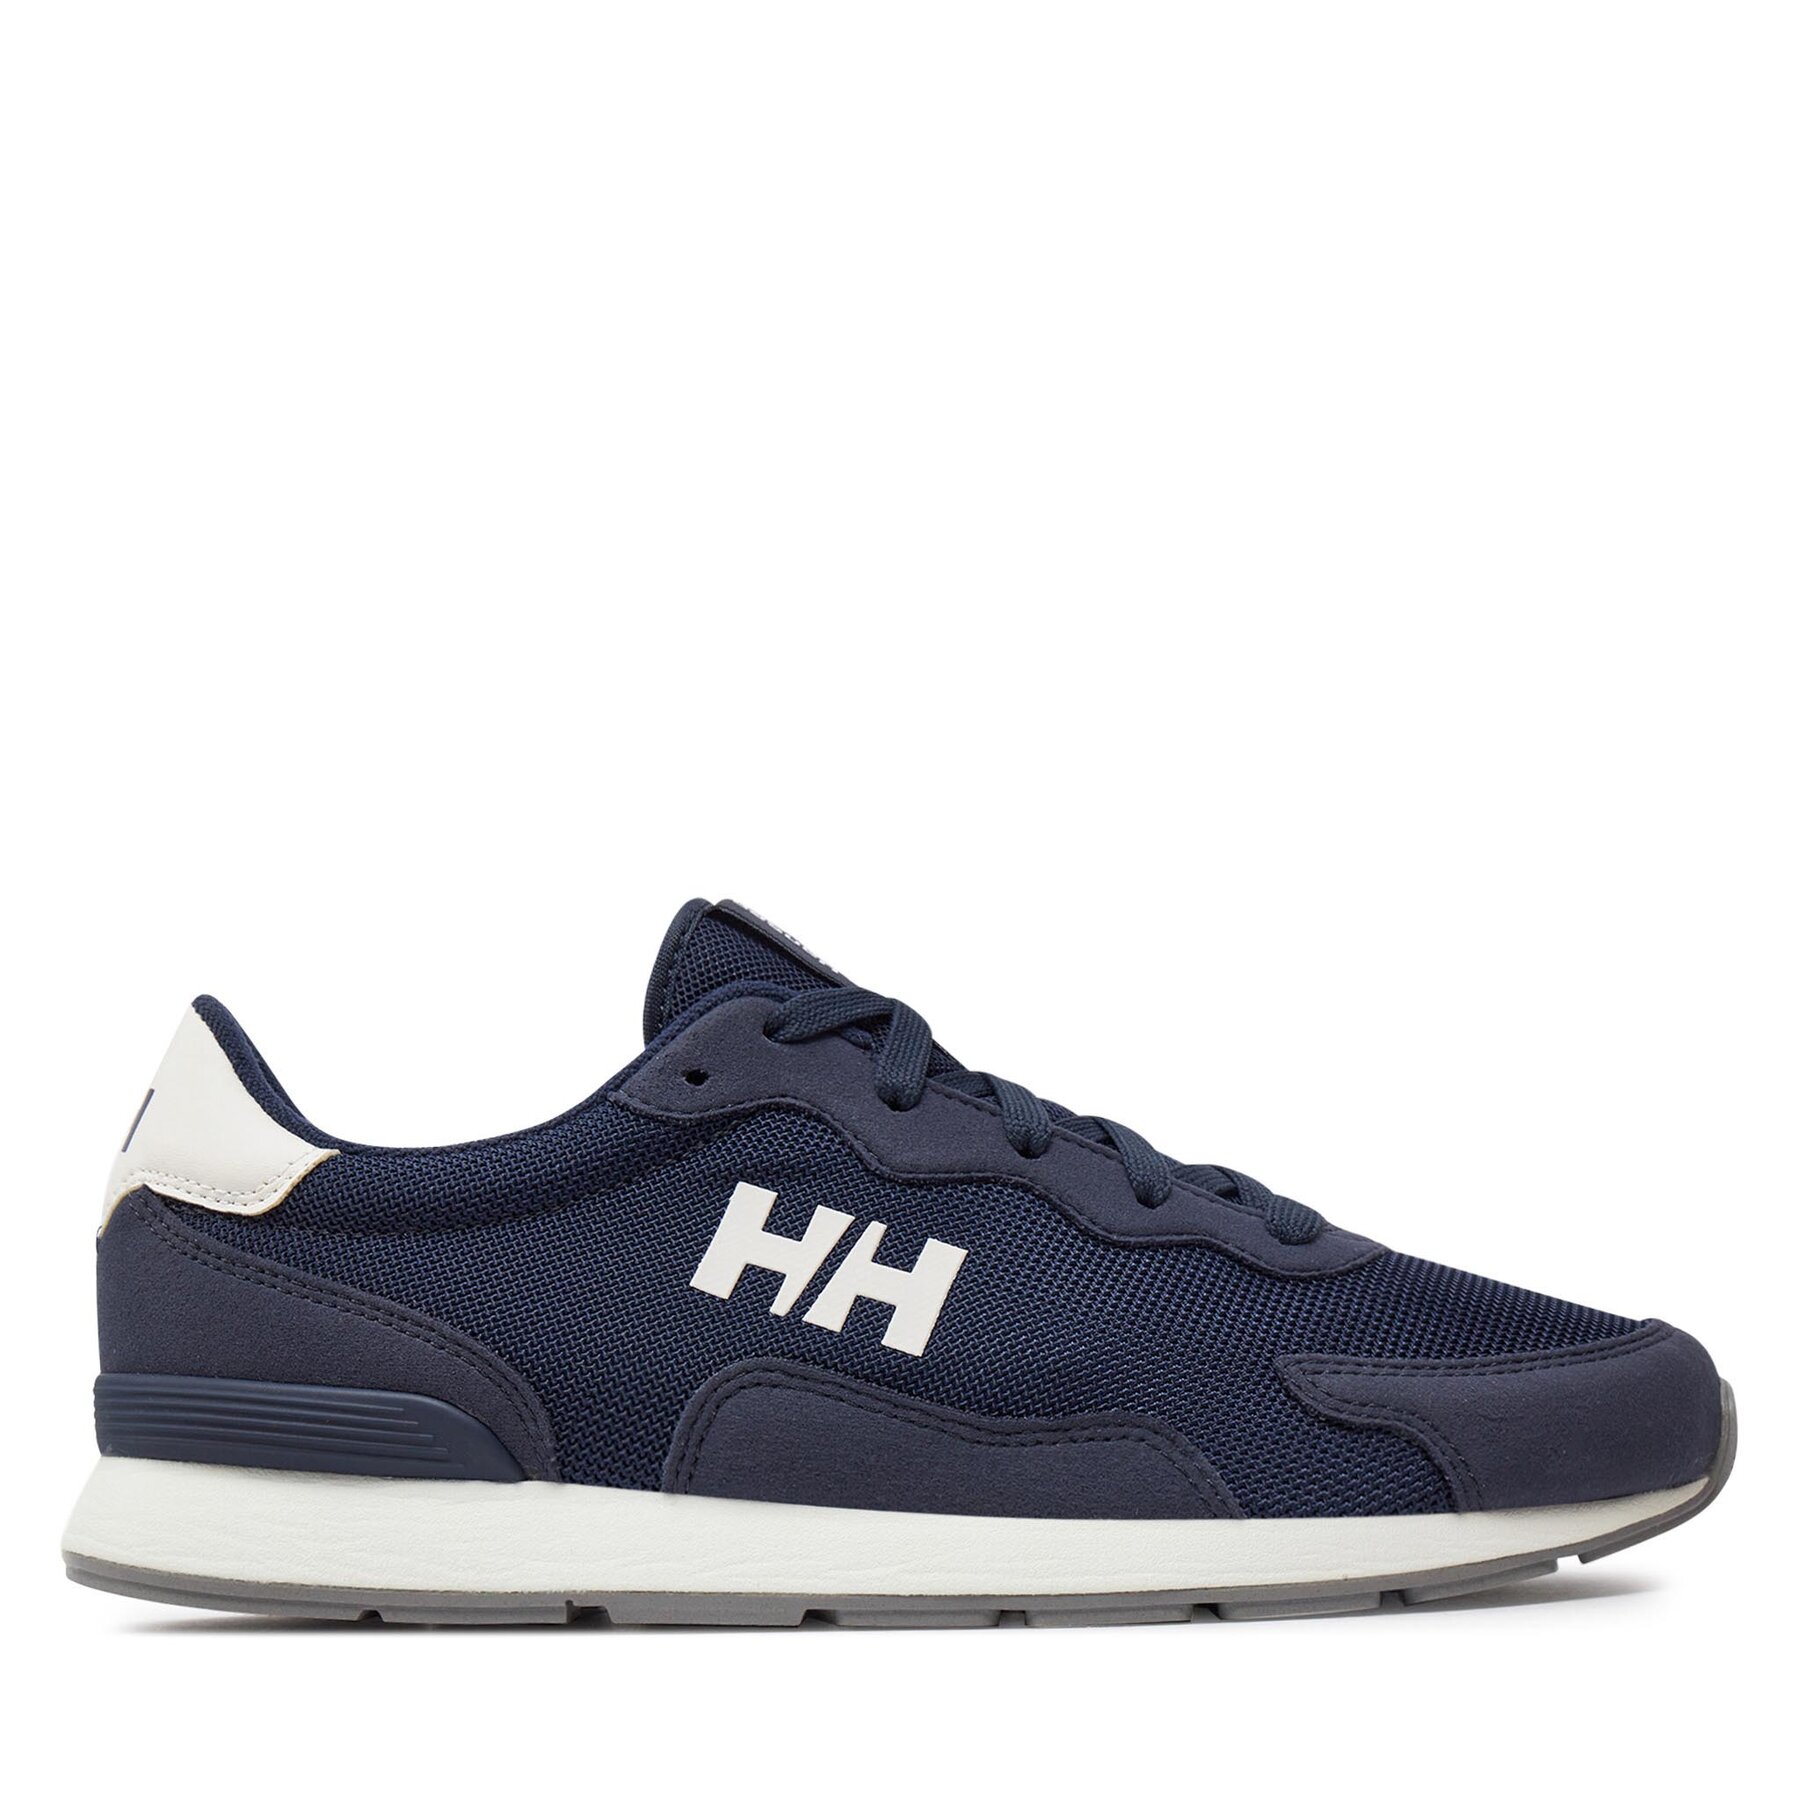 Sneakers Helly Hansen Furrow 2 11996 Navy/White 597 von Helly Hansen